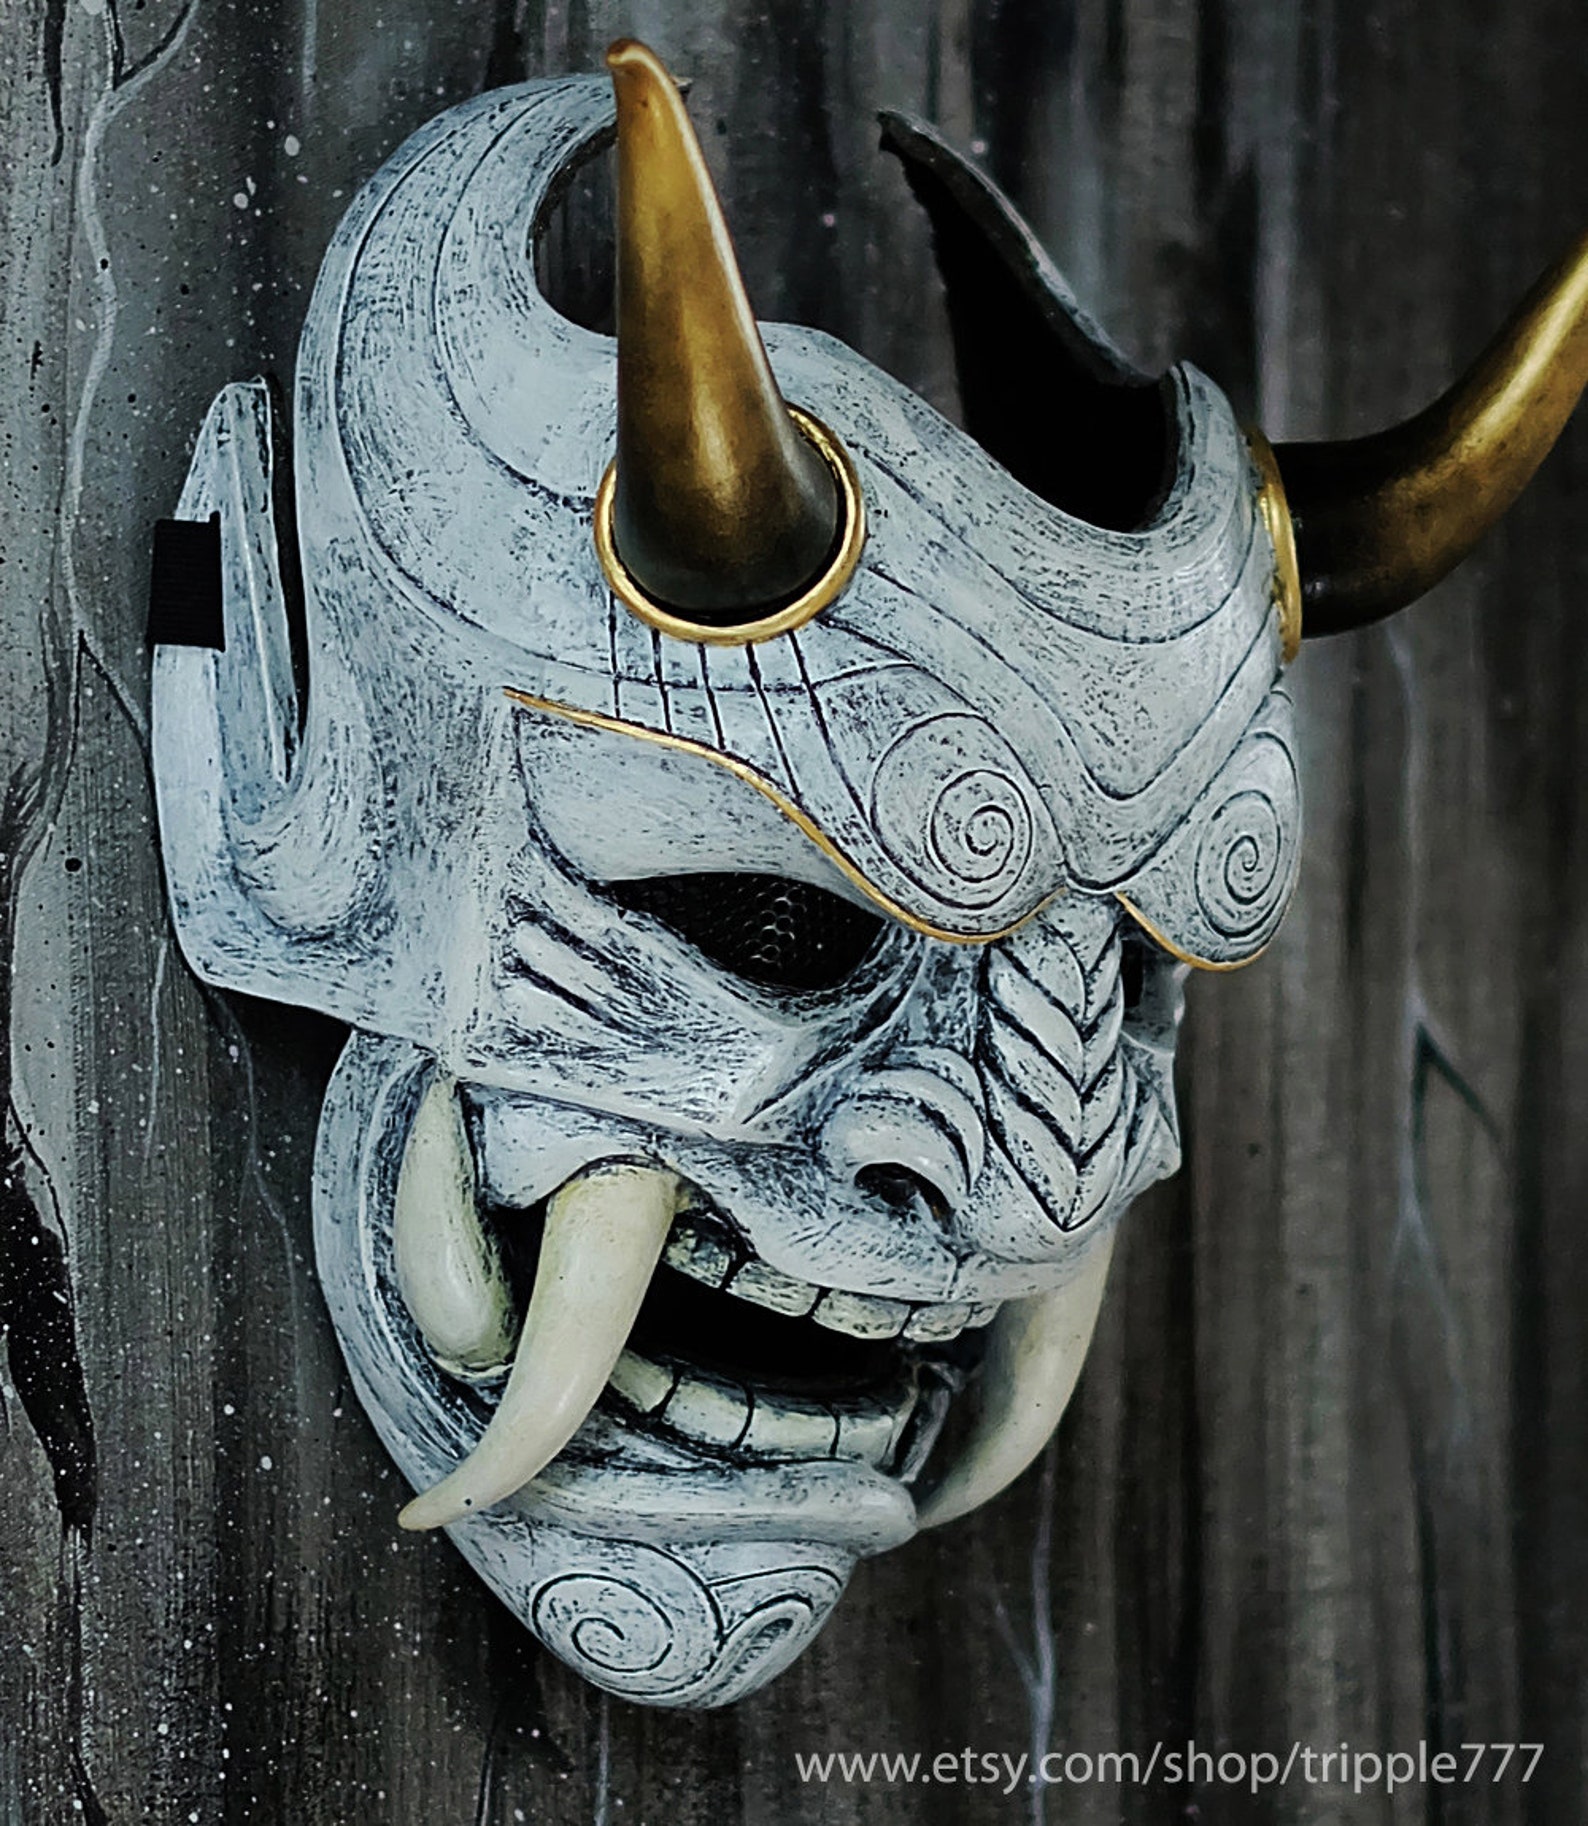 Японская маска они. Маска они Самурай. Хання маска Самурай. Японская маска Hannya самурая. Маска Hannya демон.